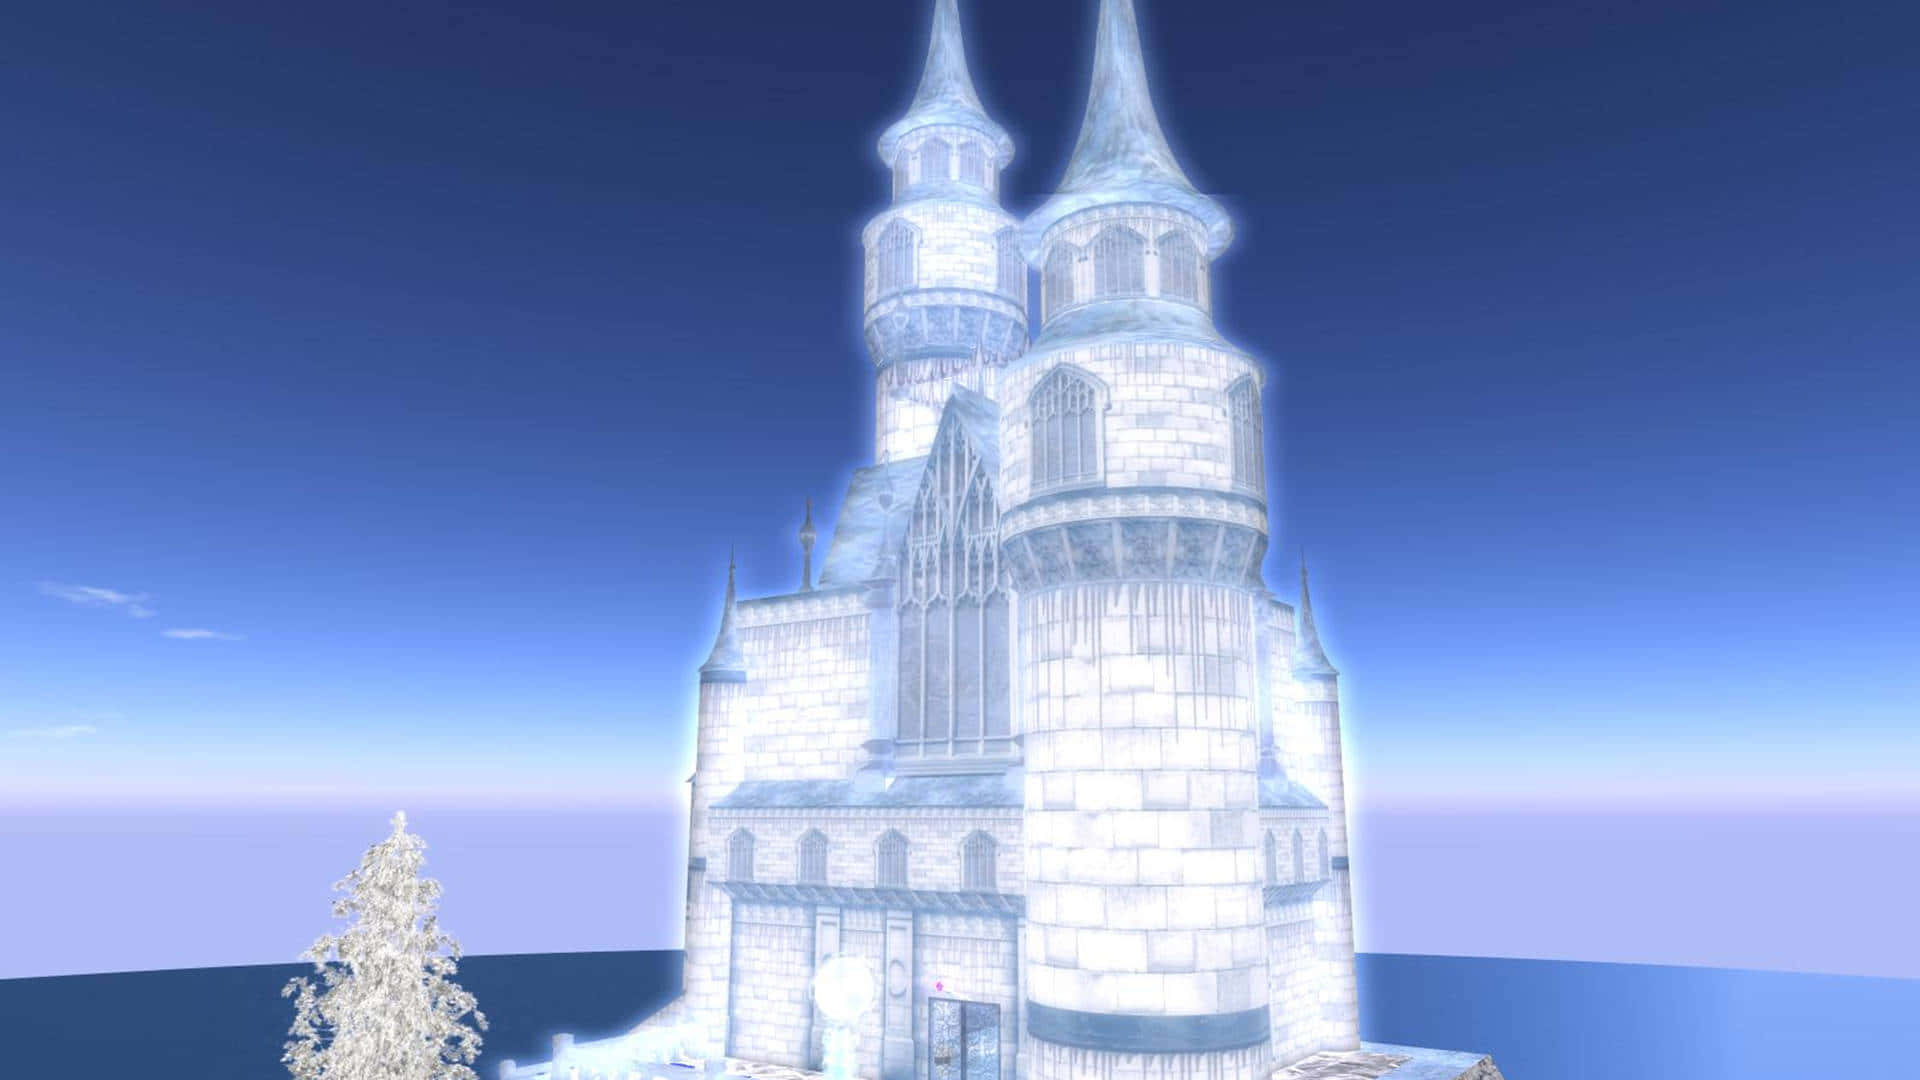 "Frozen Castle Amidst Snowy Night"